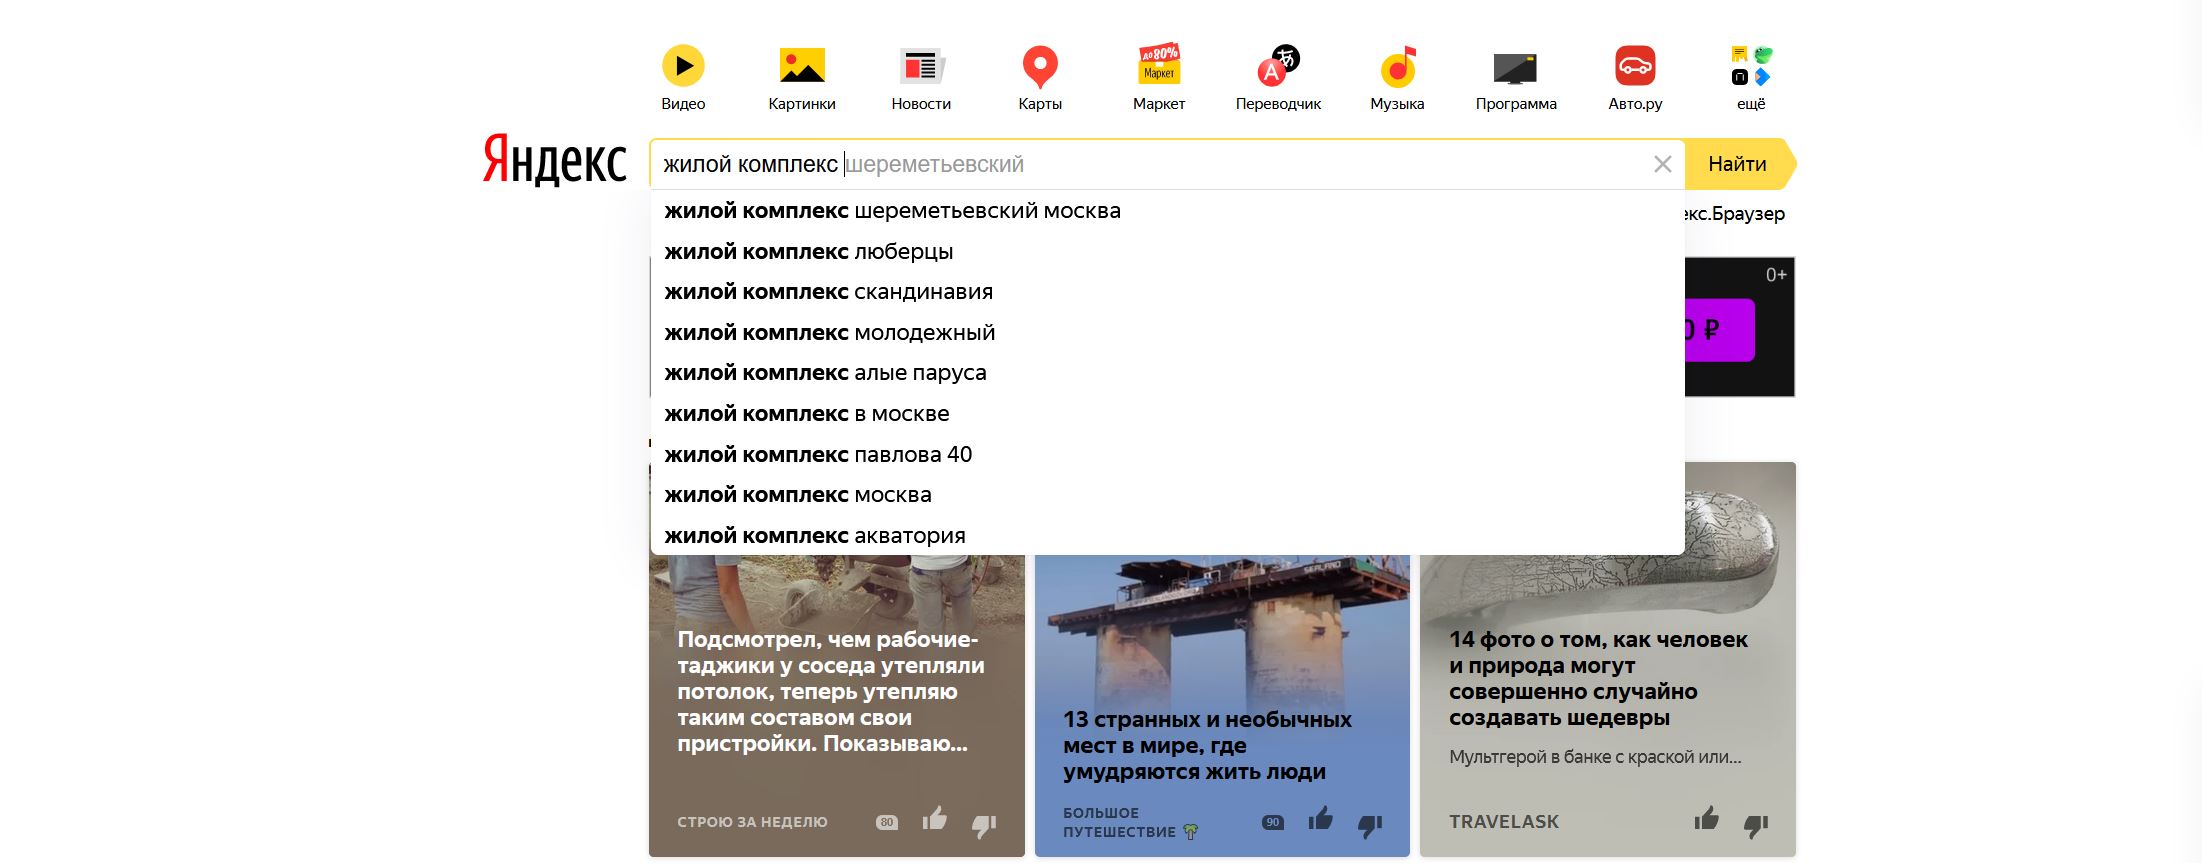 Яндекс подсказки, жилой комплекс. Подсказкин